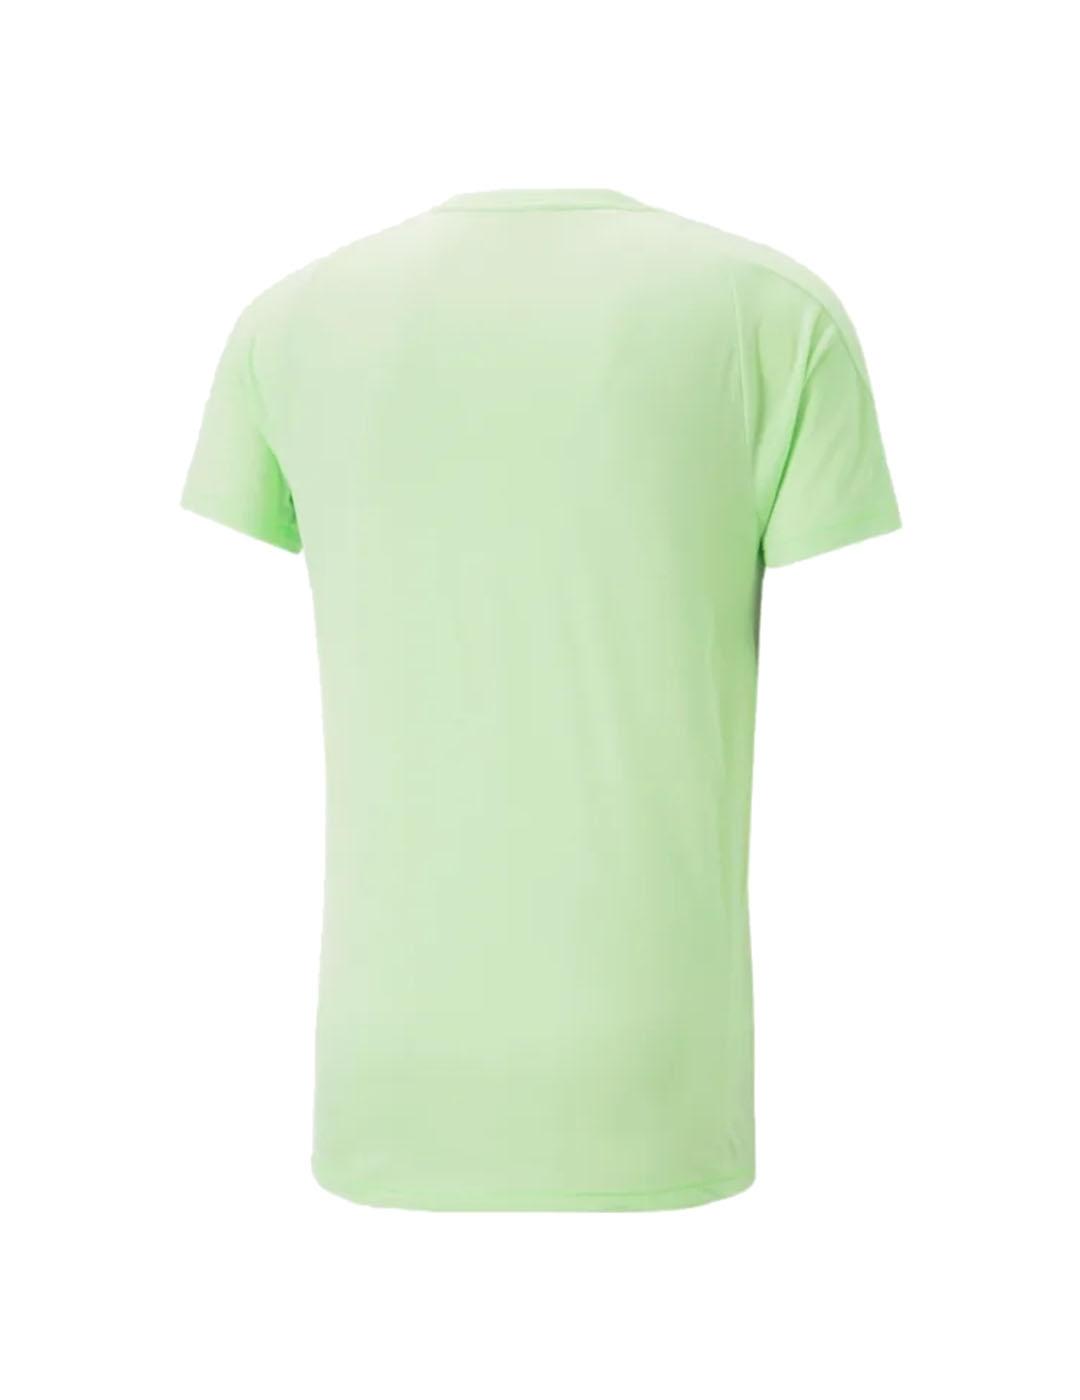 Camiseta Hombre Puma Evostripe Verde